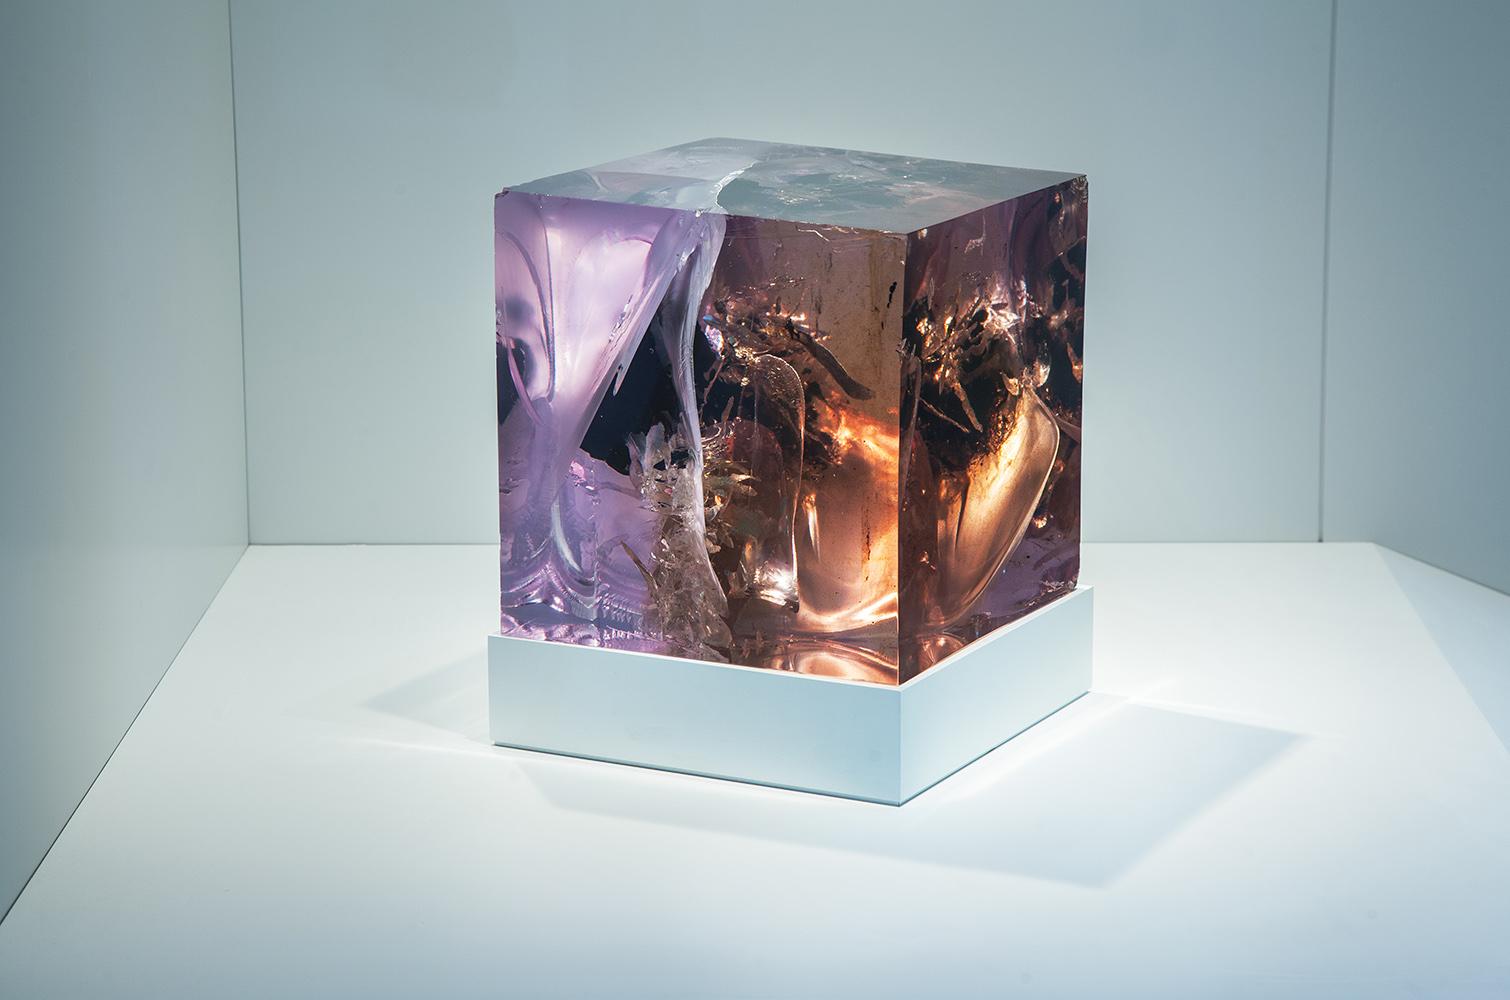 Abstrakte LED-Lichtskulptur "Thesis 3" von Tom Price